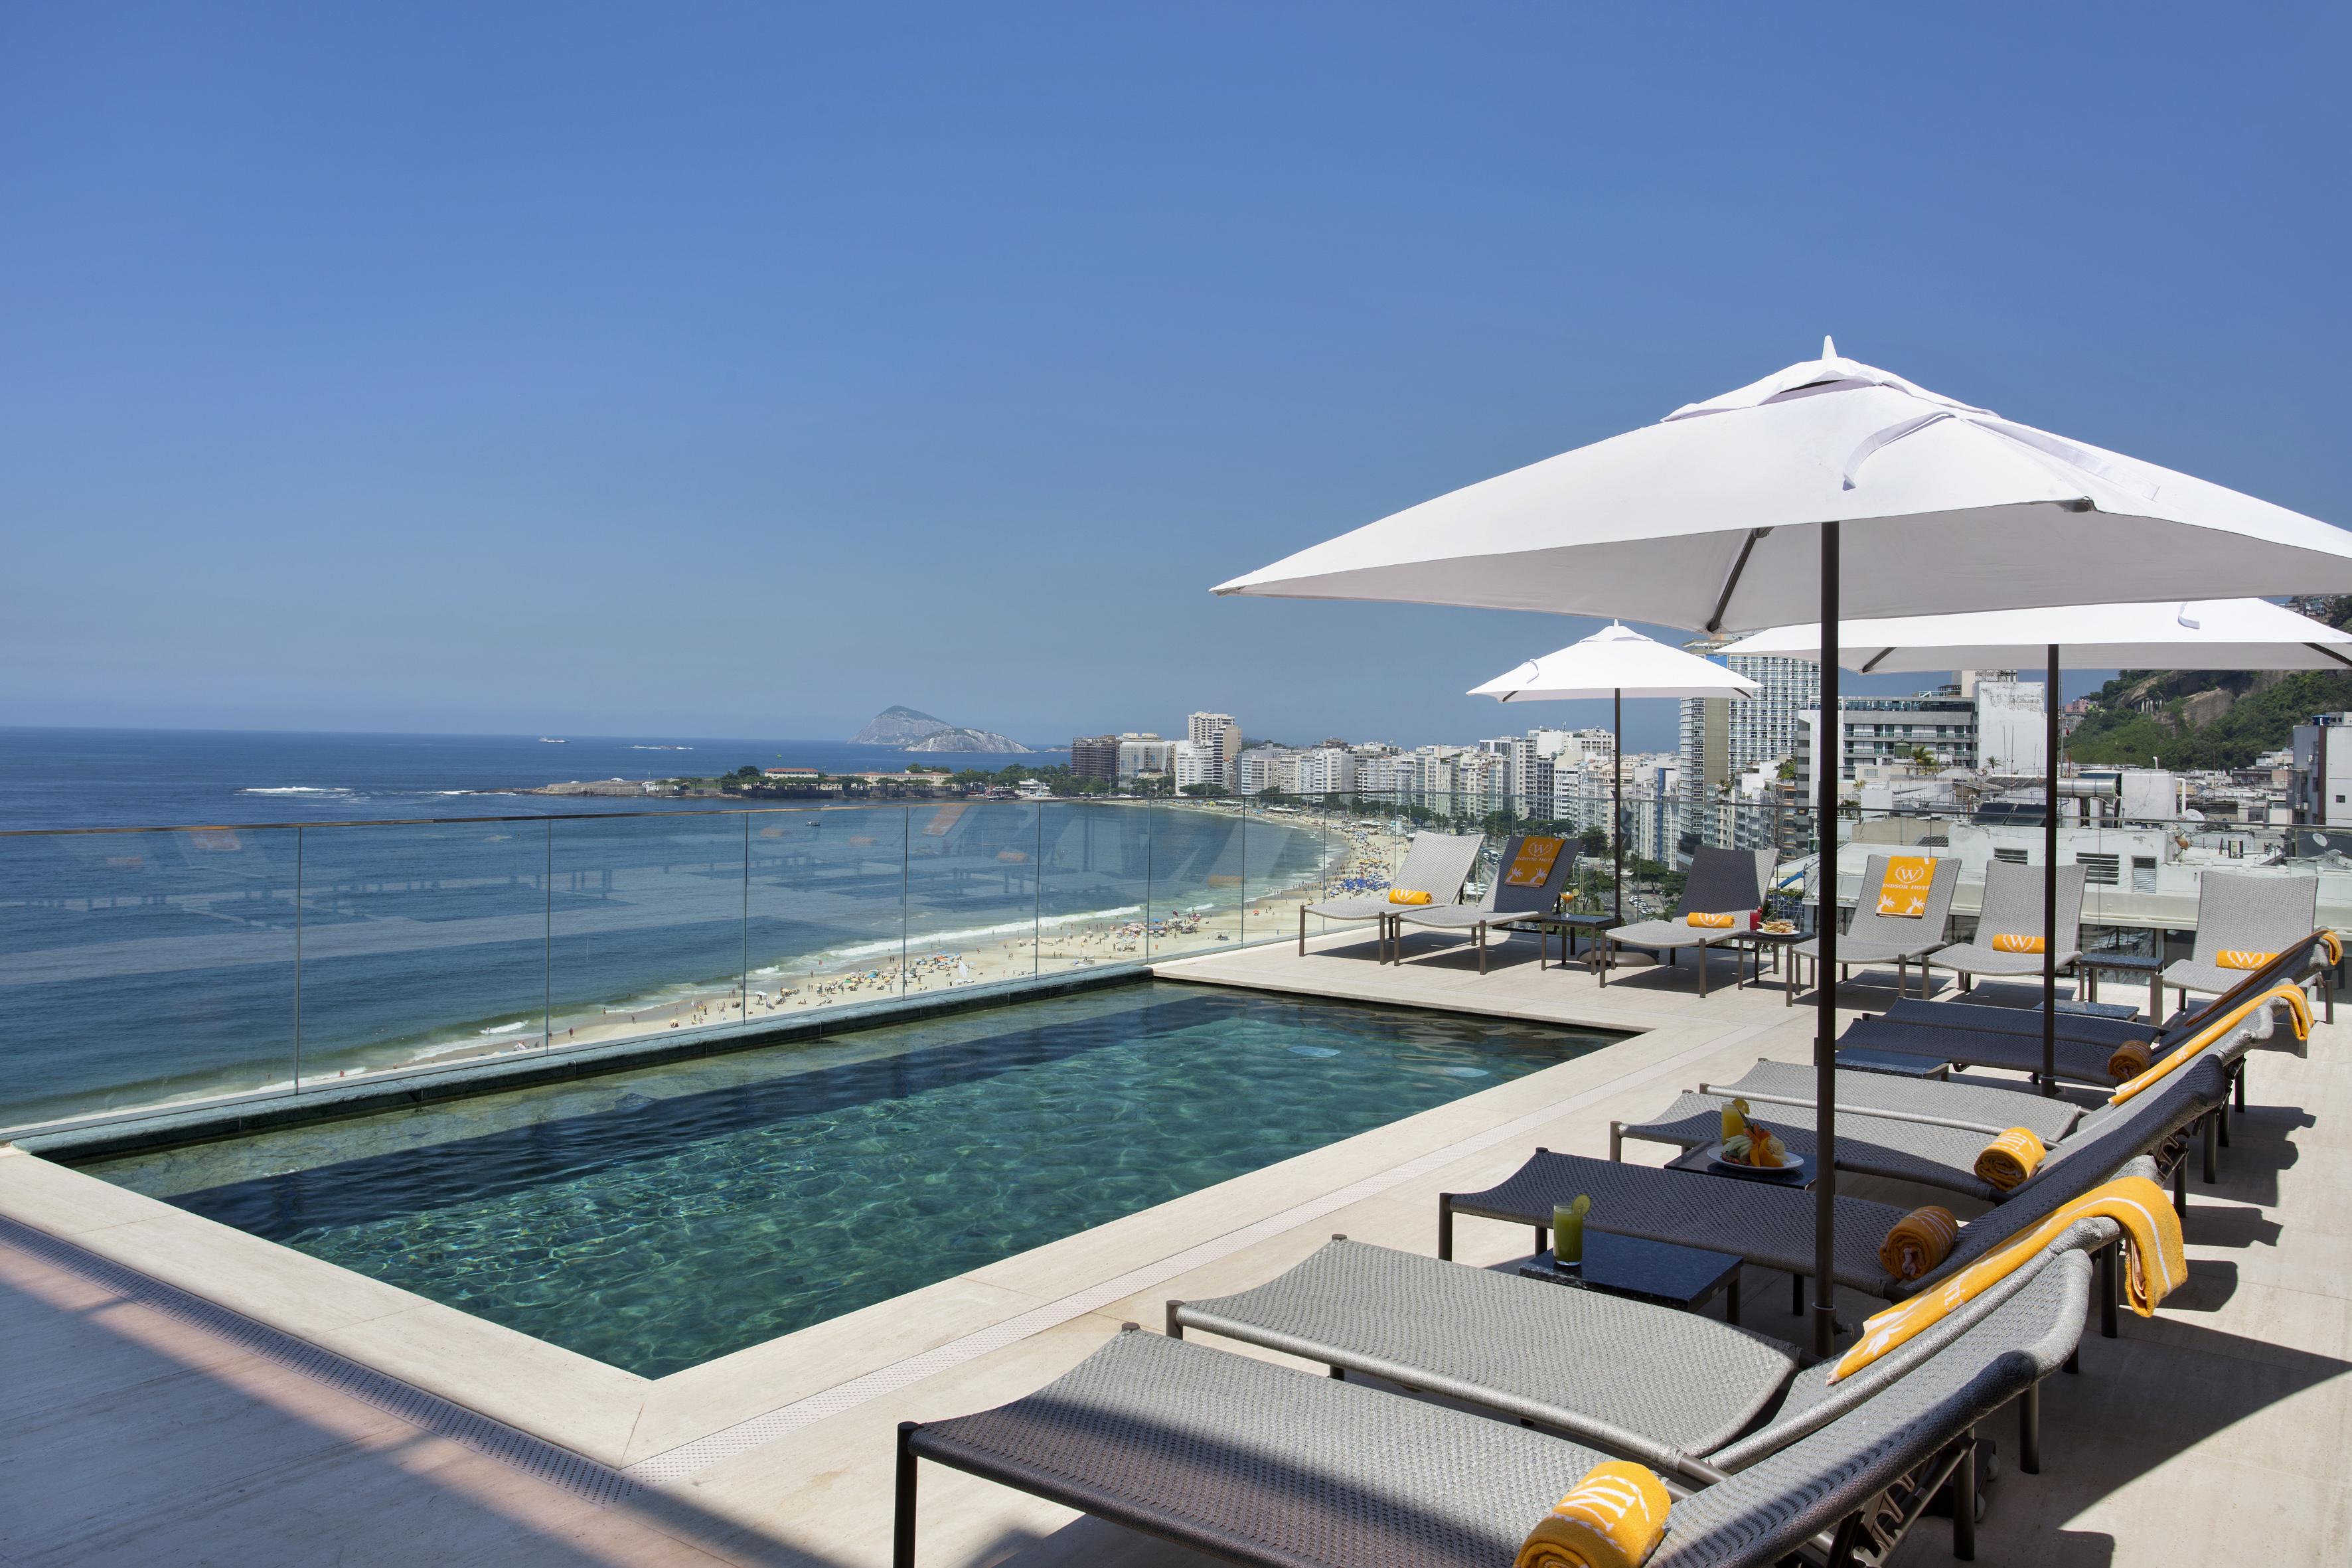 Windsor California Copacabana Hotel Rio de Janeiro Exterior foto